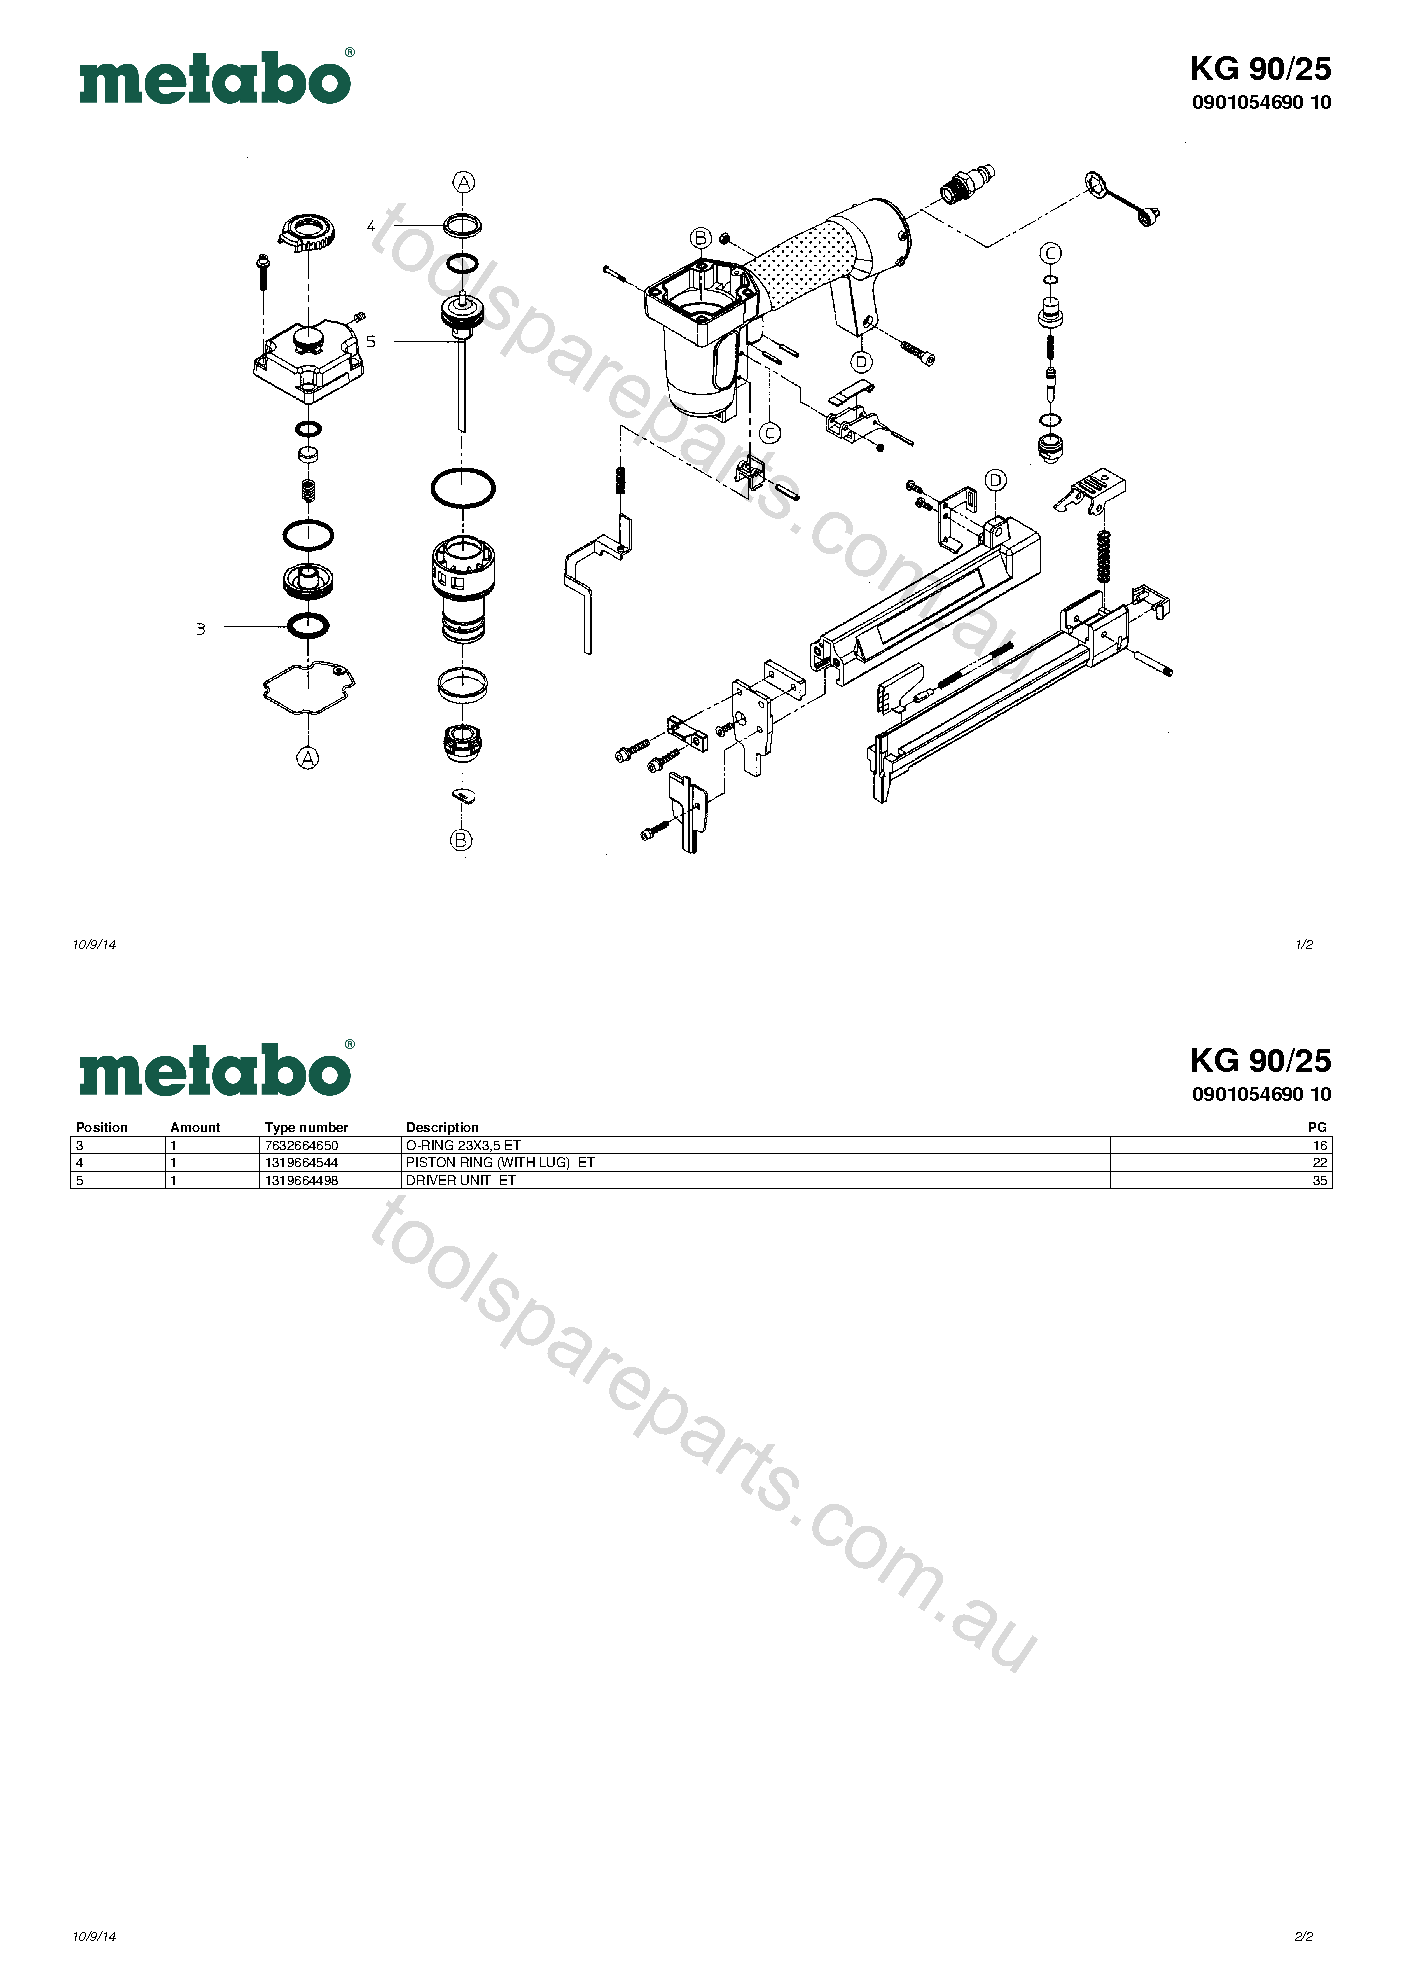 Metabo KG 90/25 0901054690 10  Diagram 1